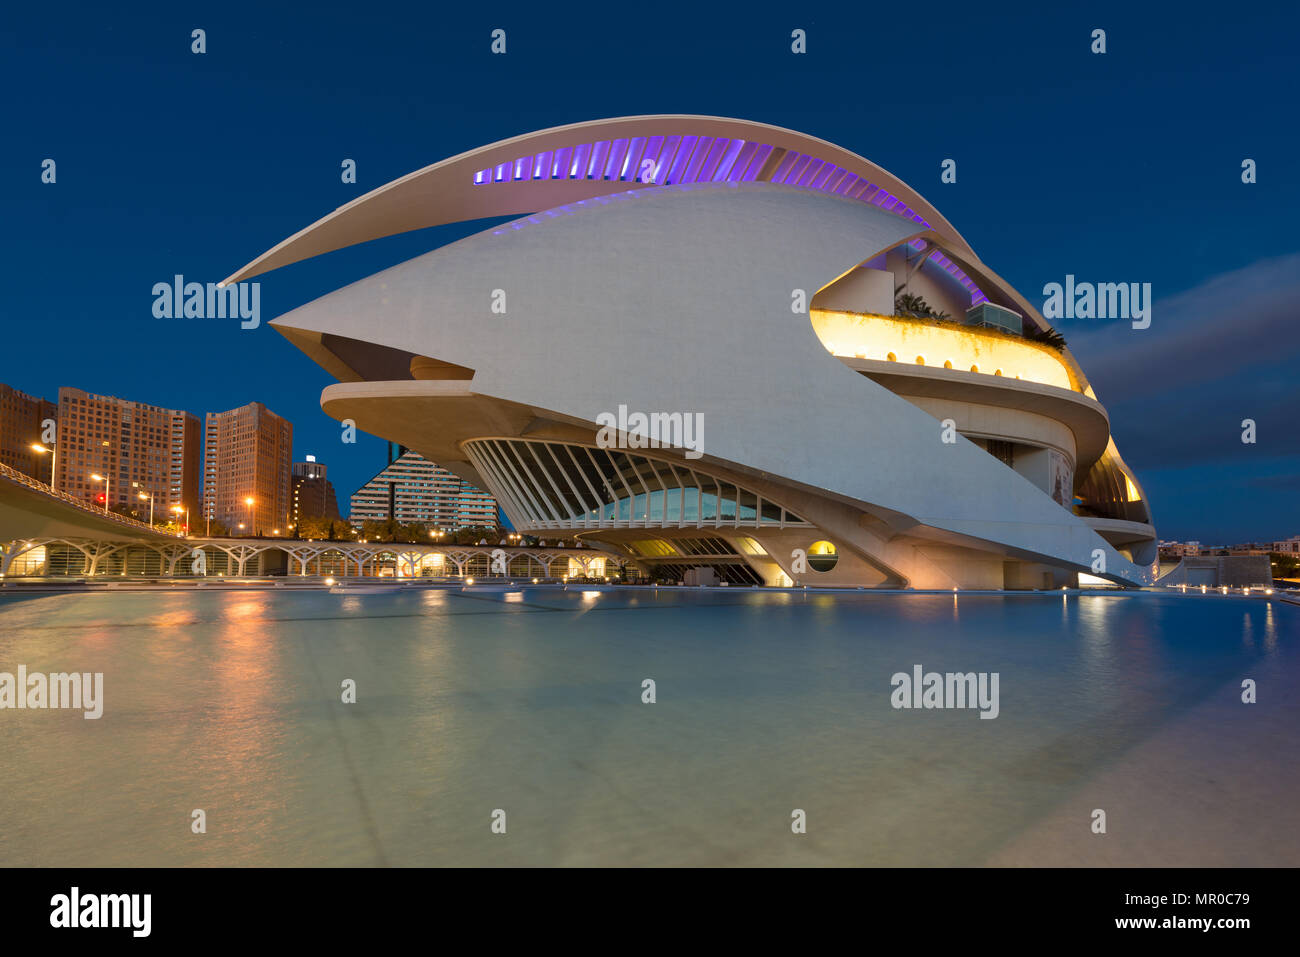 Valencia Opernhaus oder Palau de les Arts Reina Sofia in der Nacht in Valencia, Spanien. Stockfoto